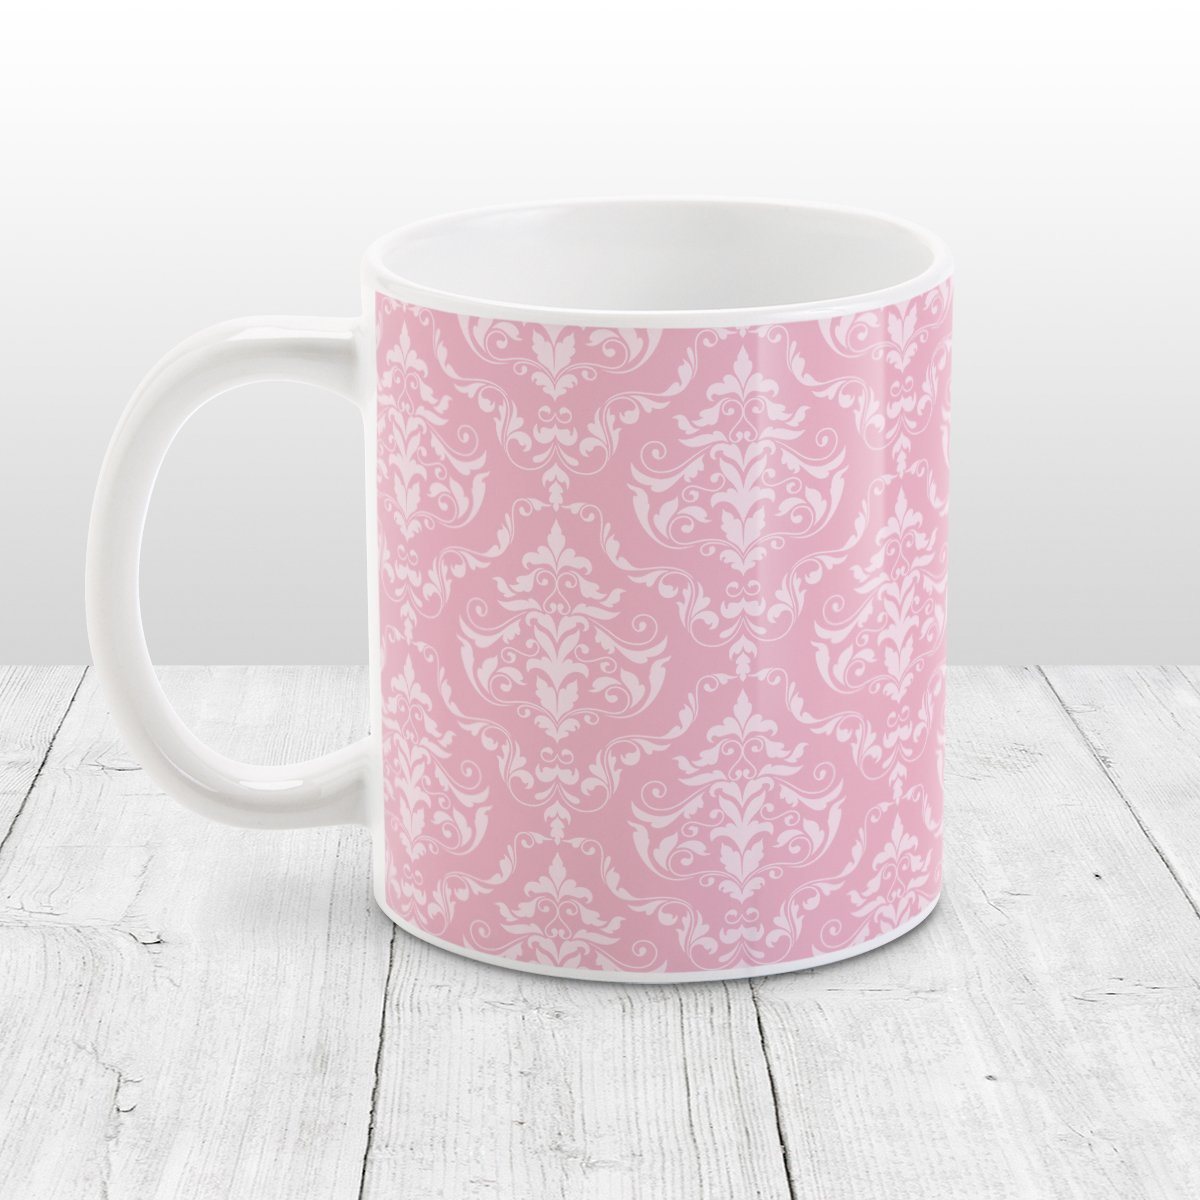 Pink Damask Pattern Mug at Amy's Coffee Mugs